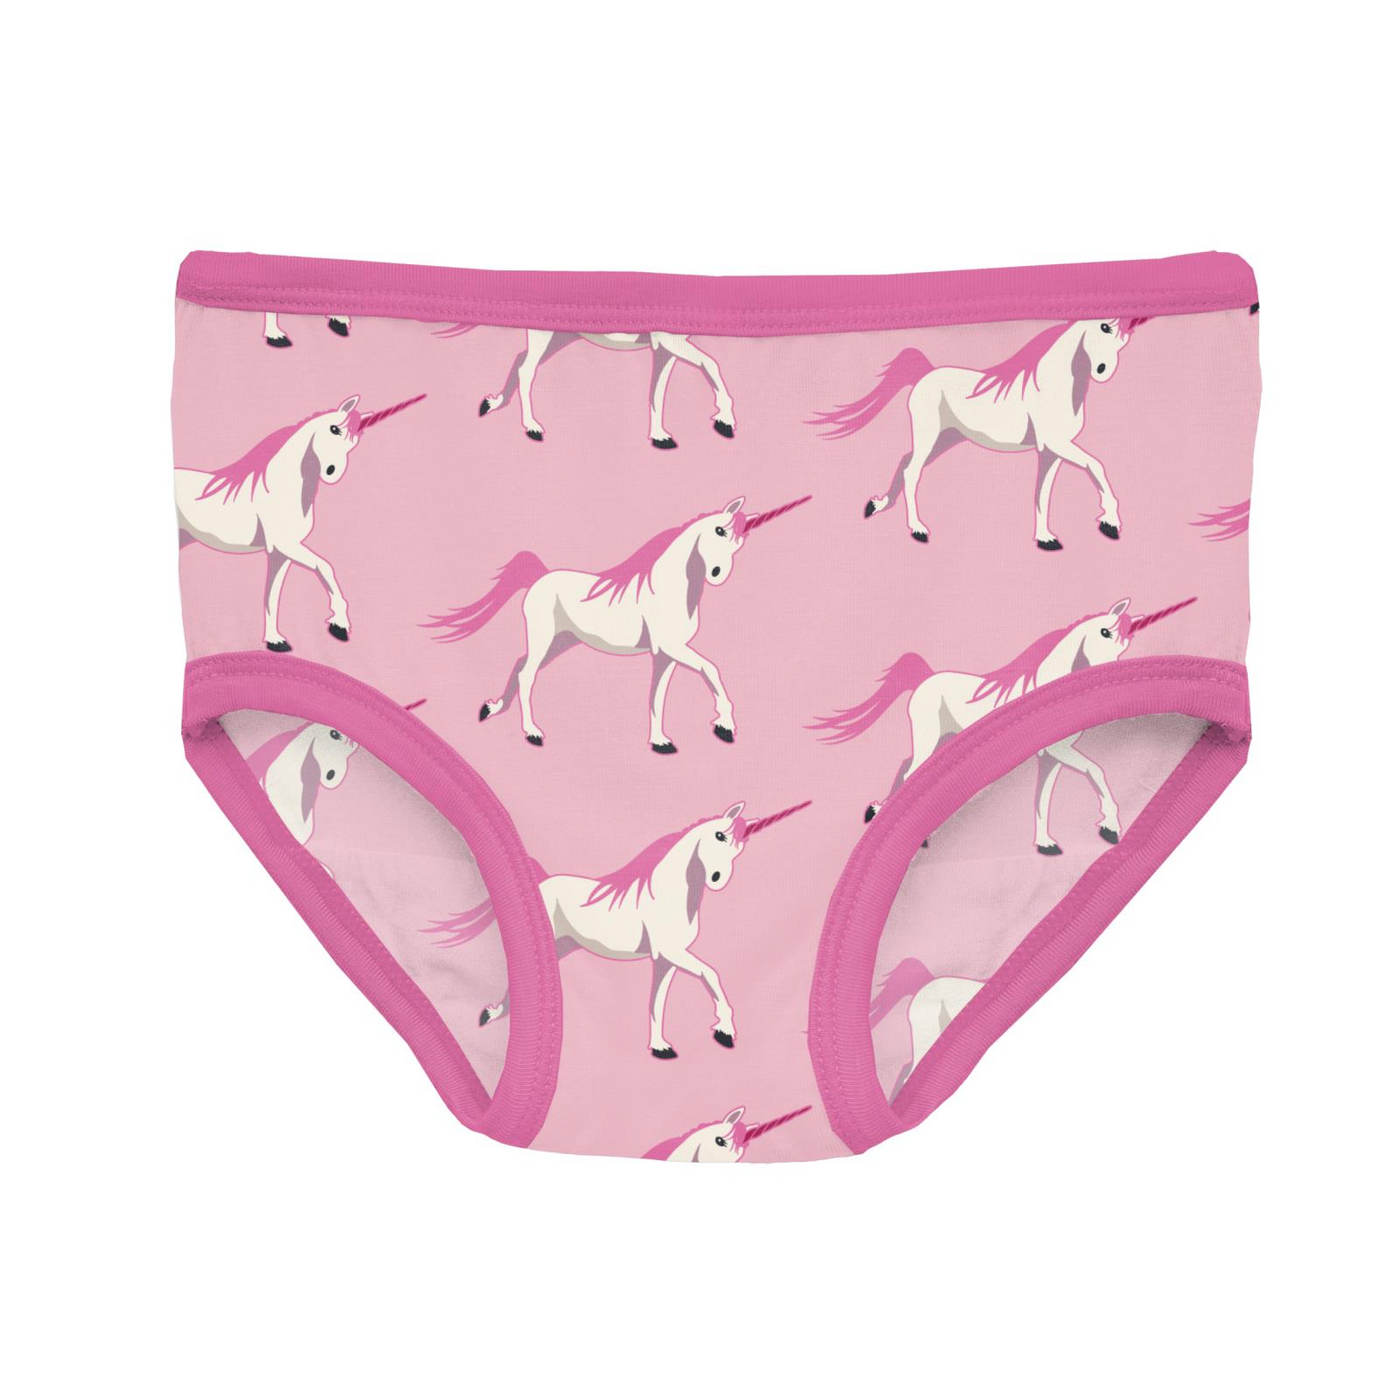 Print of the Week Kickee Pants Girl's Underwear: Cake Pop Prancing Unicorn